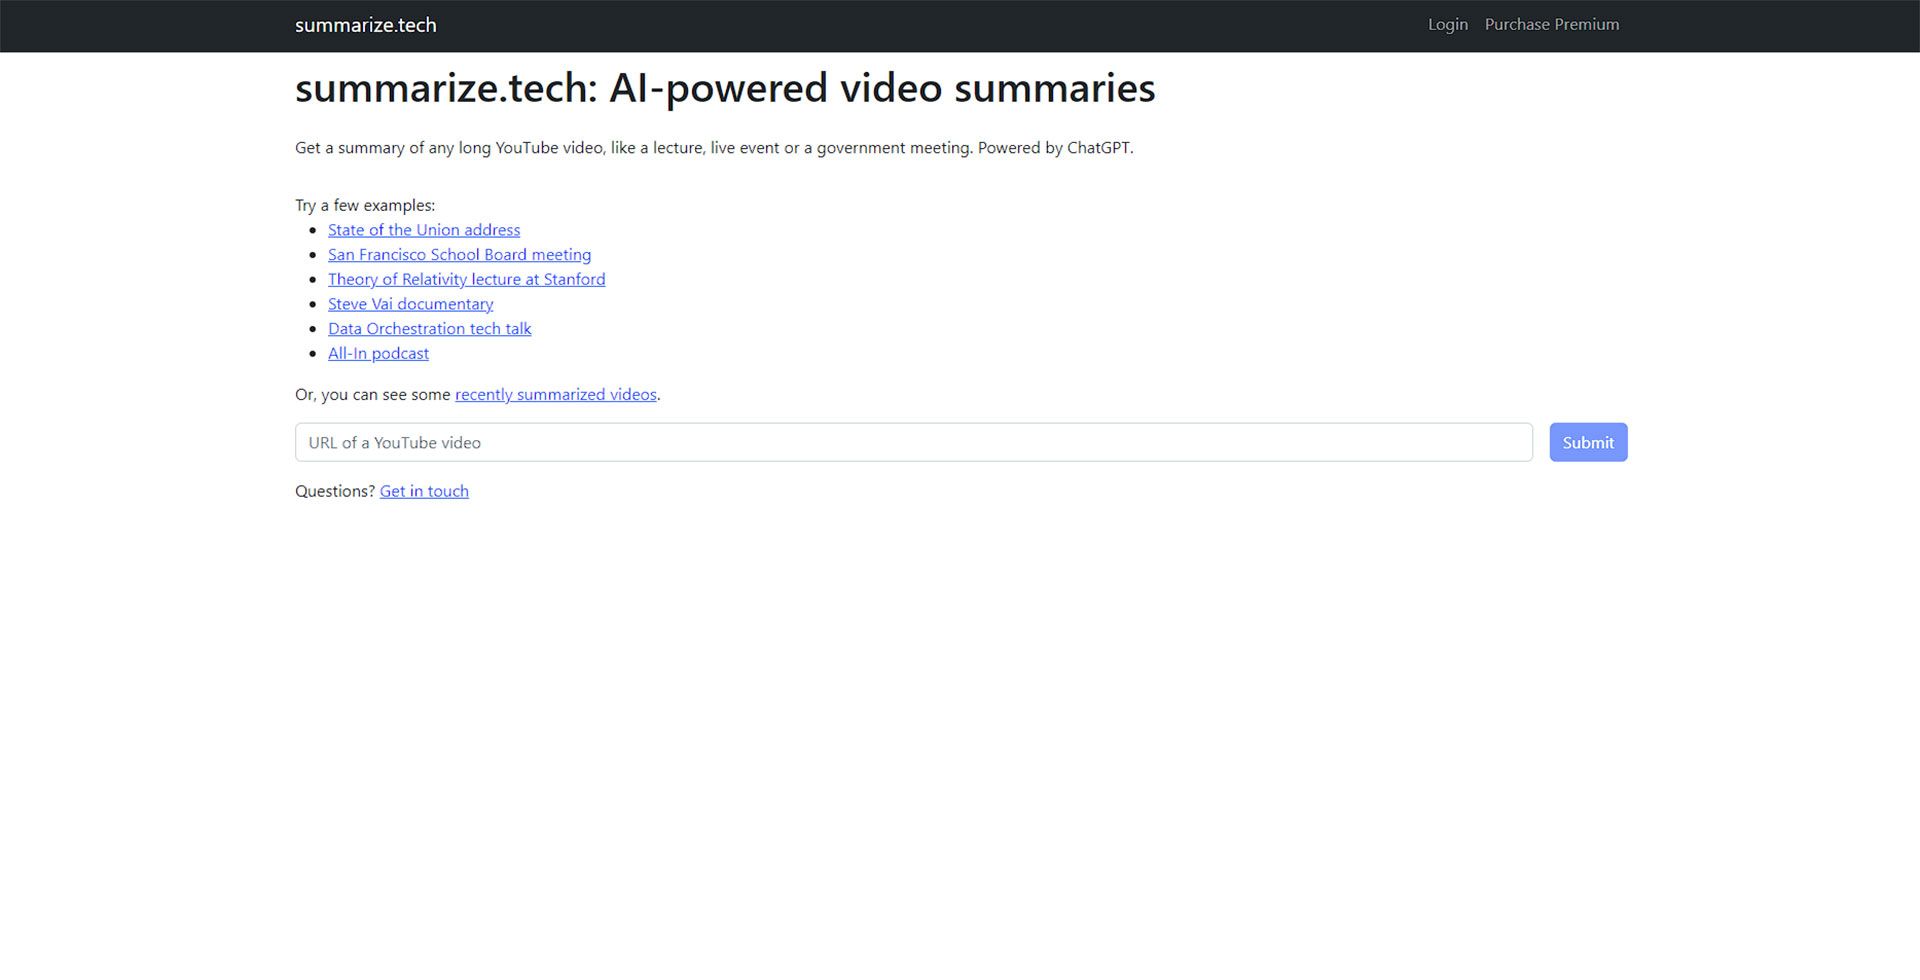 صفحه اصلی سایت Summarize.tech و باکس اضافه کردن لینک یوتیوب